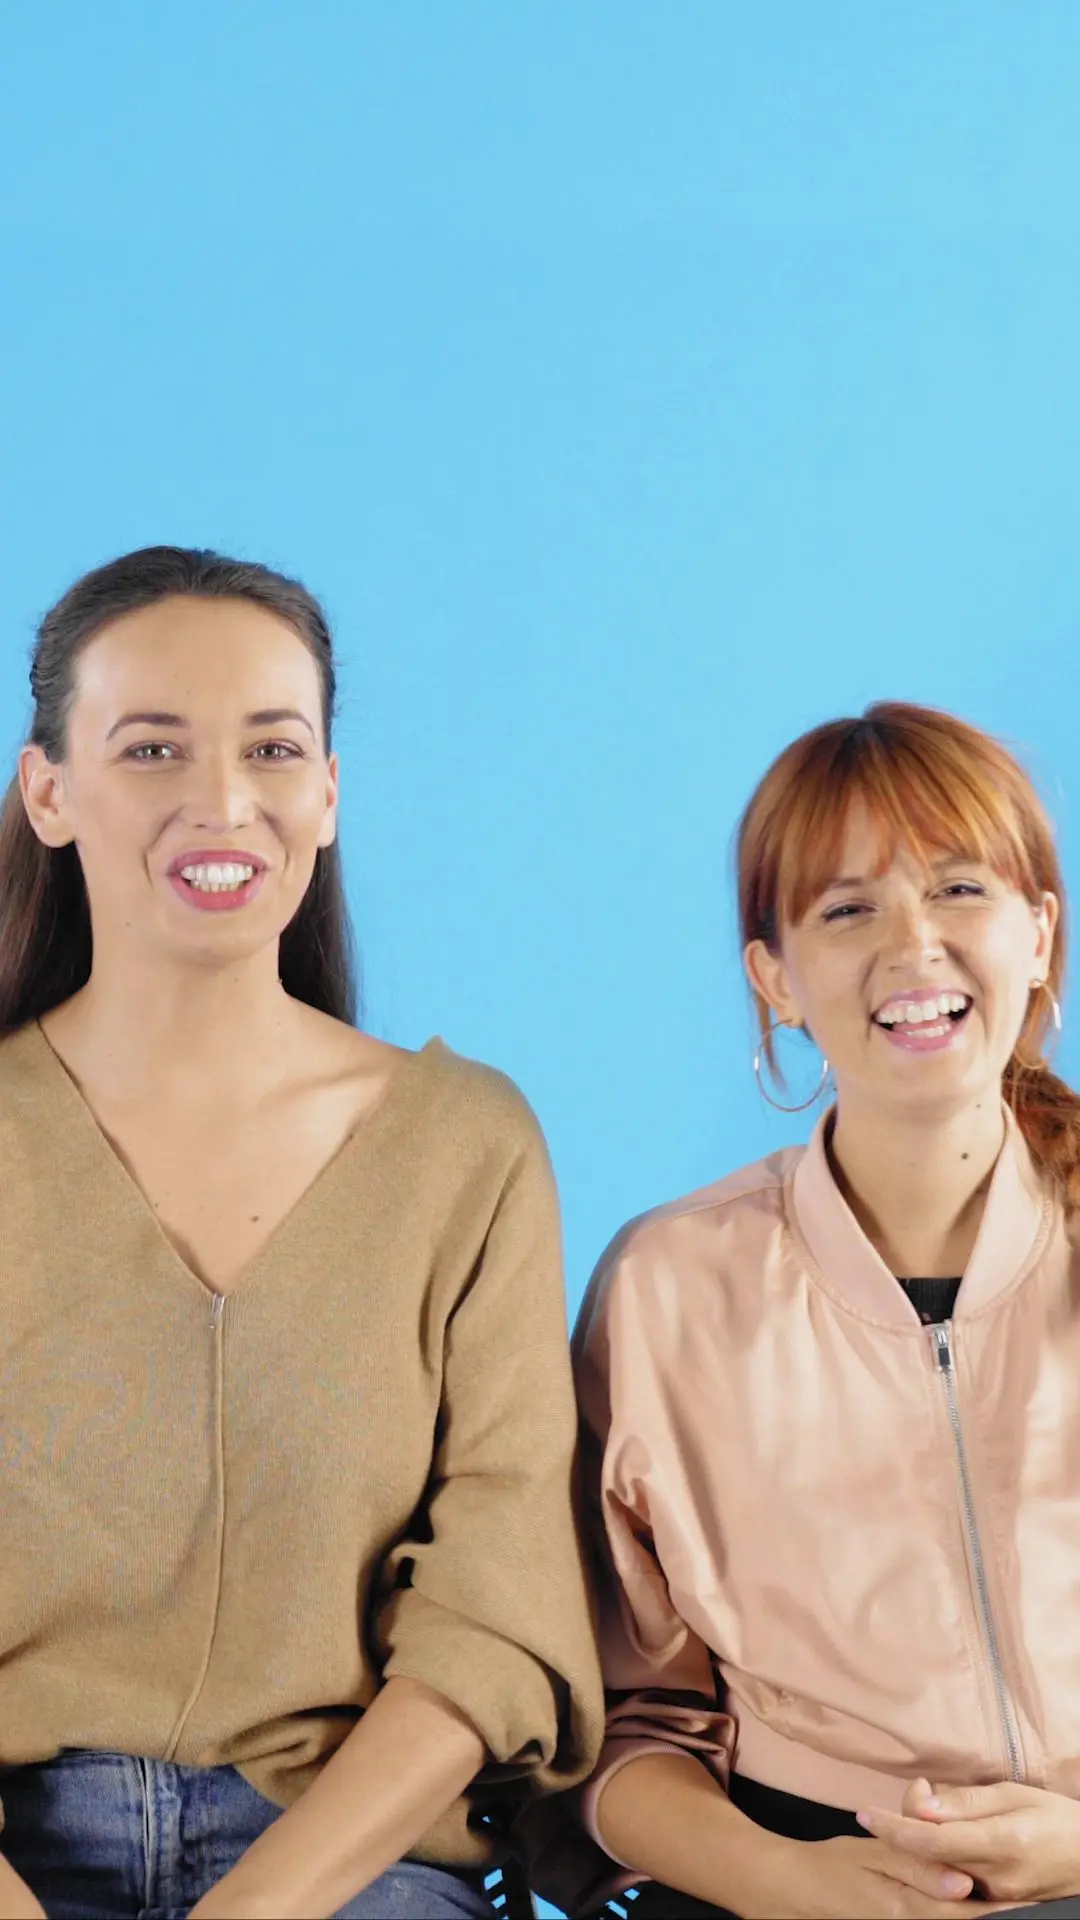 Vidéo : Pur pote test avec Audrey Pirault et Justine Le Pottier